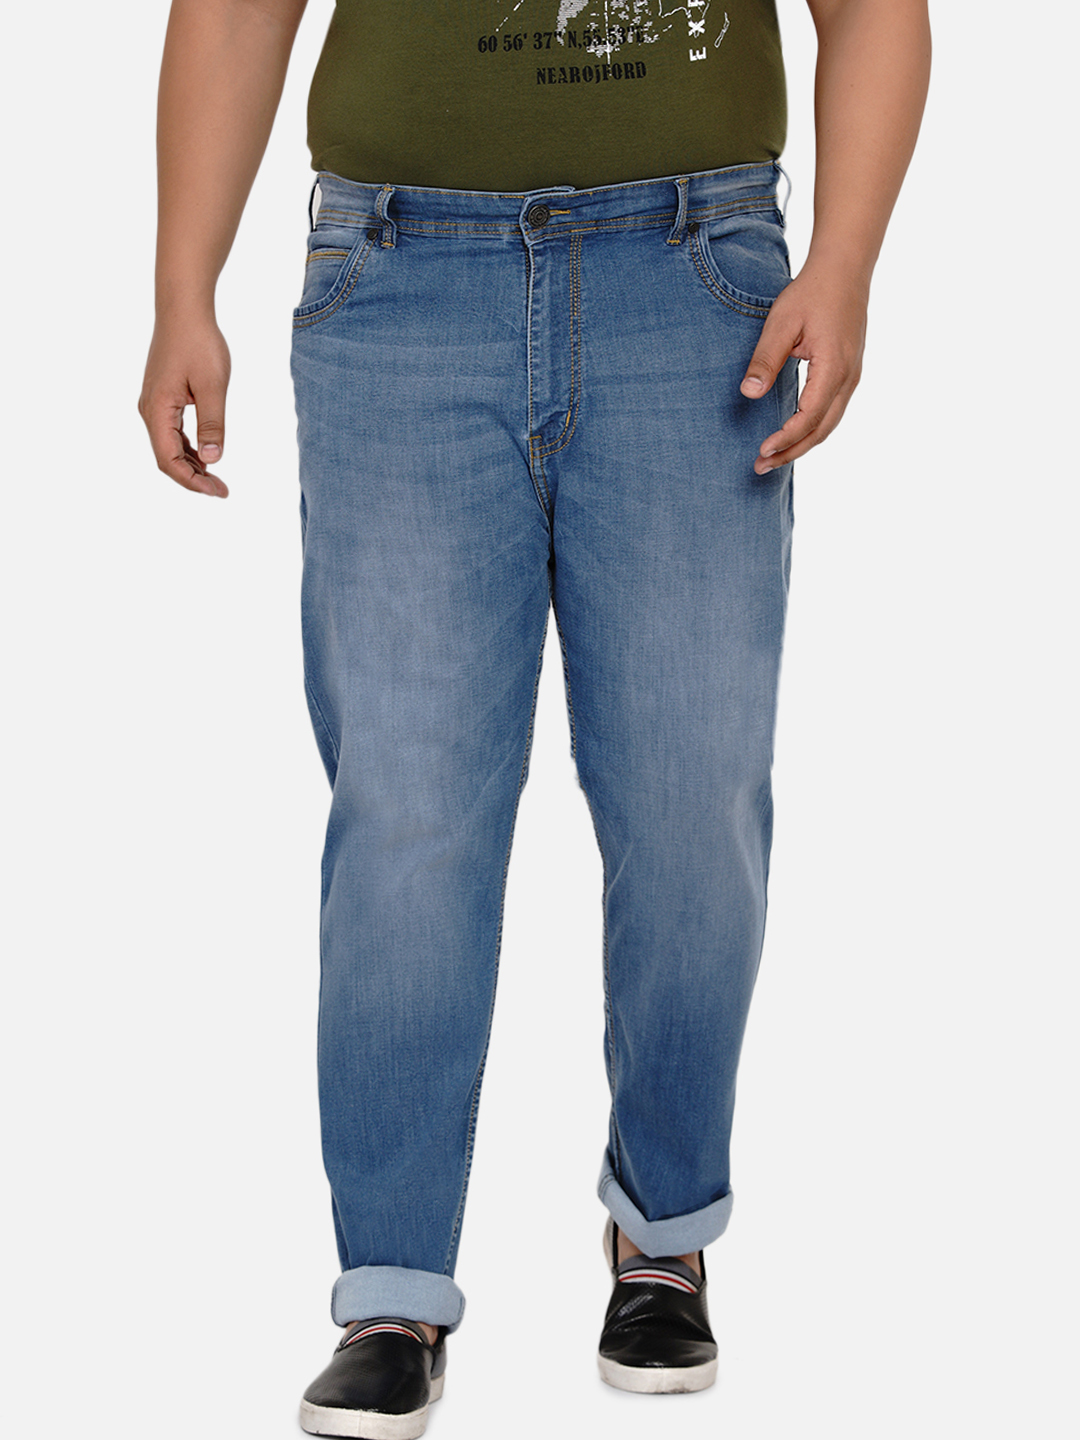 affordables/jeans/EJPJ2021/ejpj2021-3.jpg